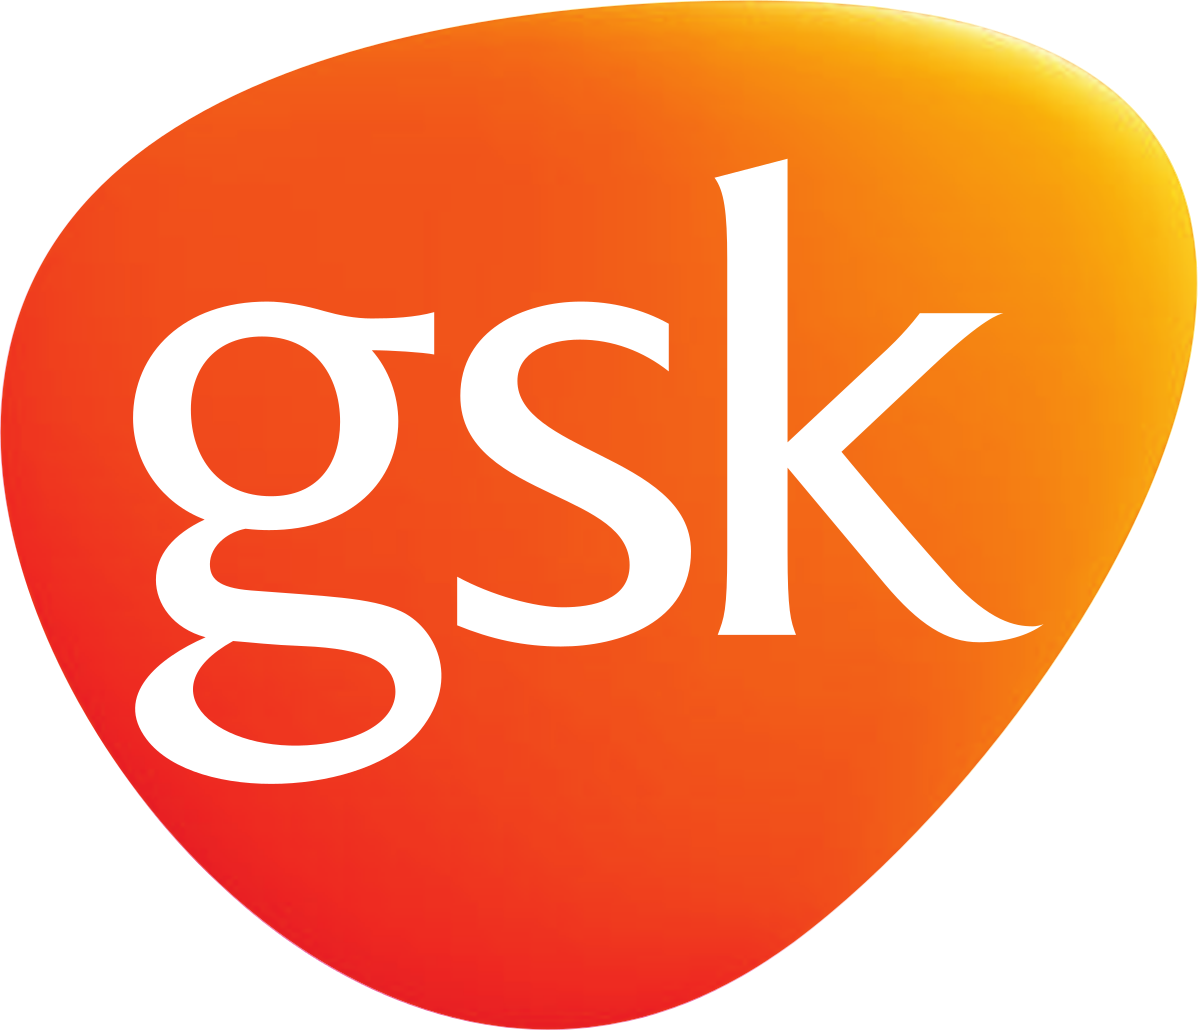 GSK-logo vector format.png